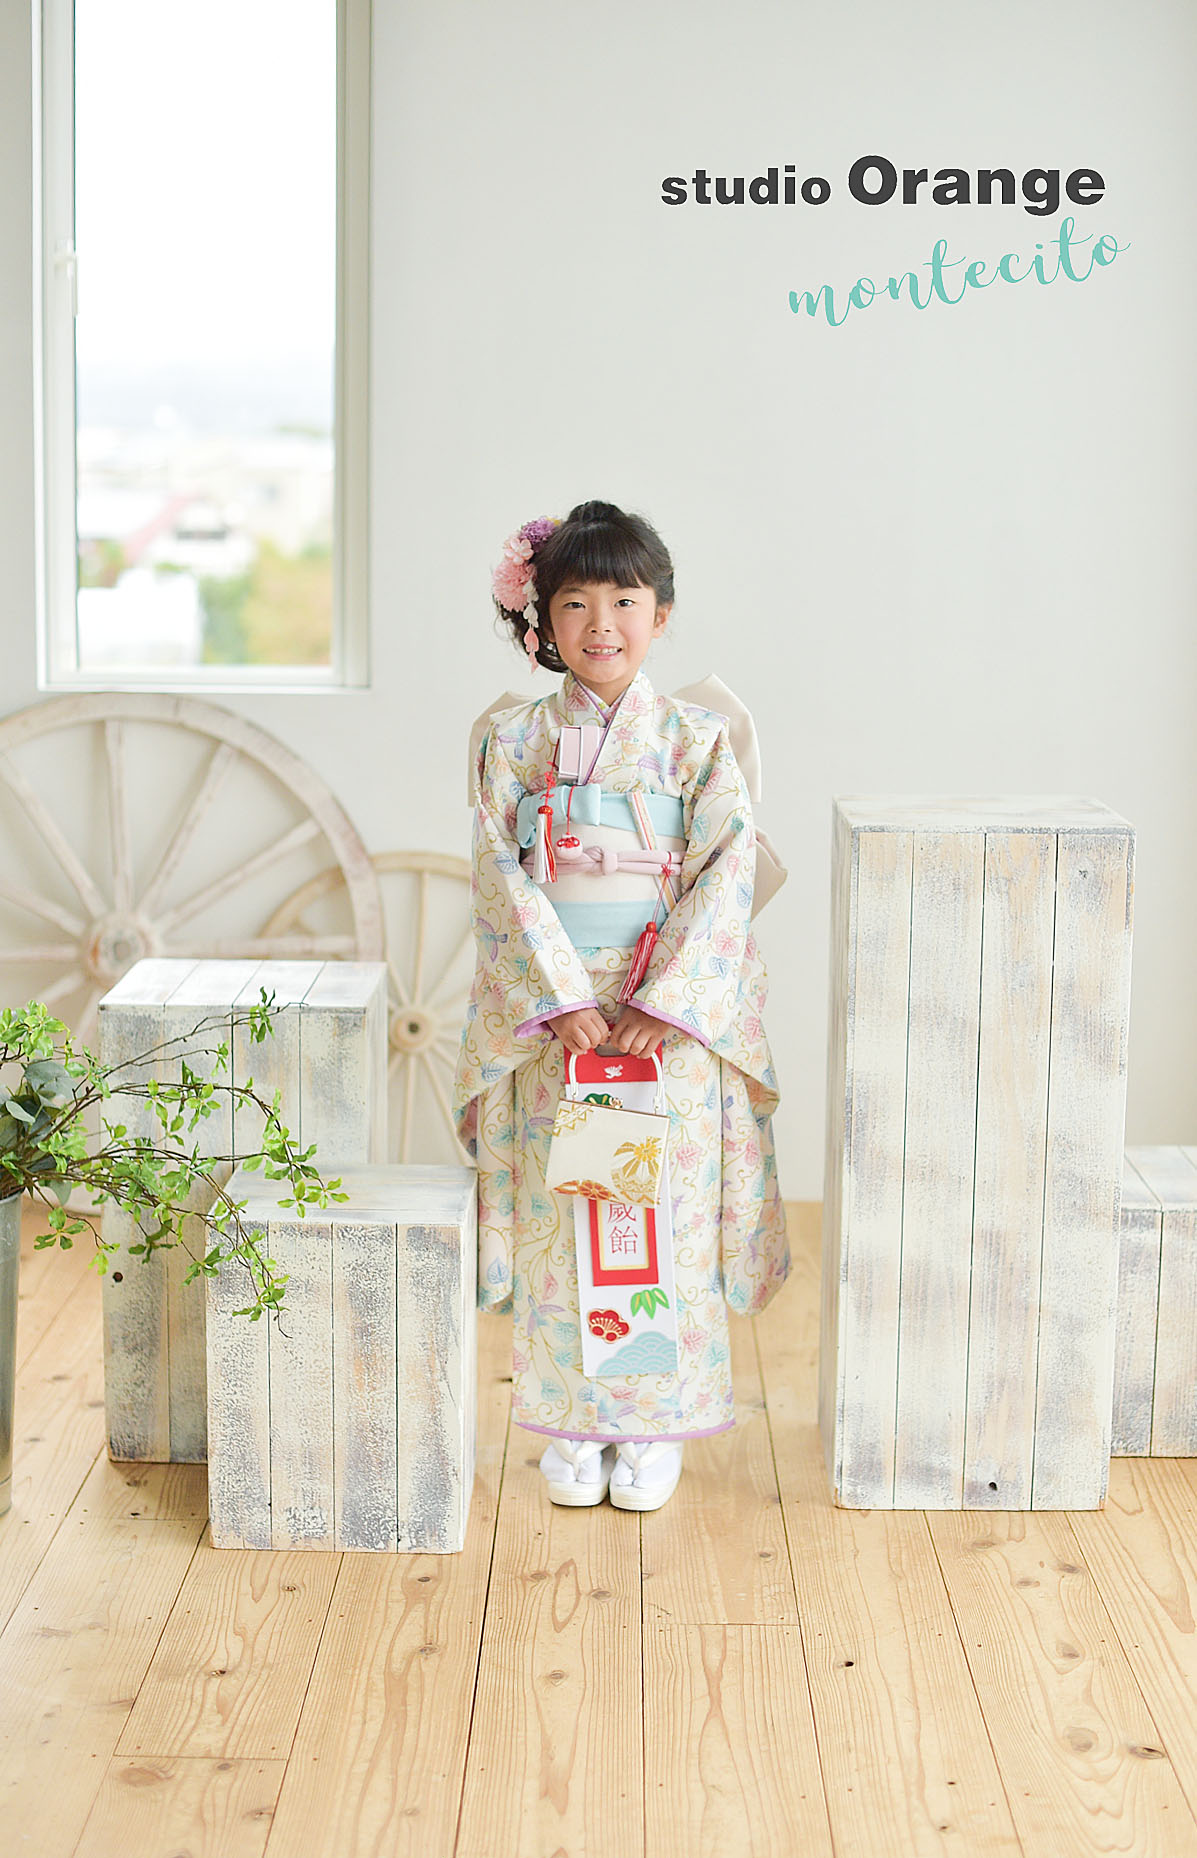 オリジナル着物で七五三前撮の7才女の子が伊丹市から | 宝塚市の写真館スタジオオレンジ・モンテシート